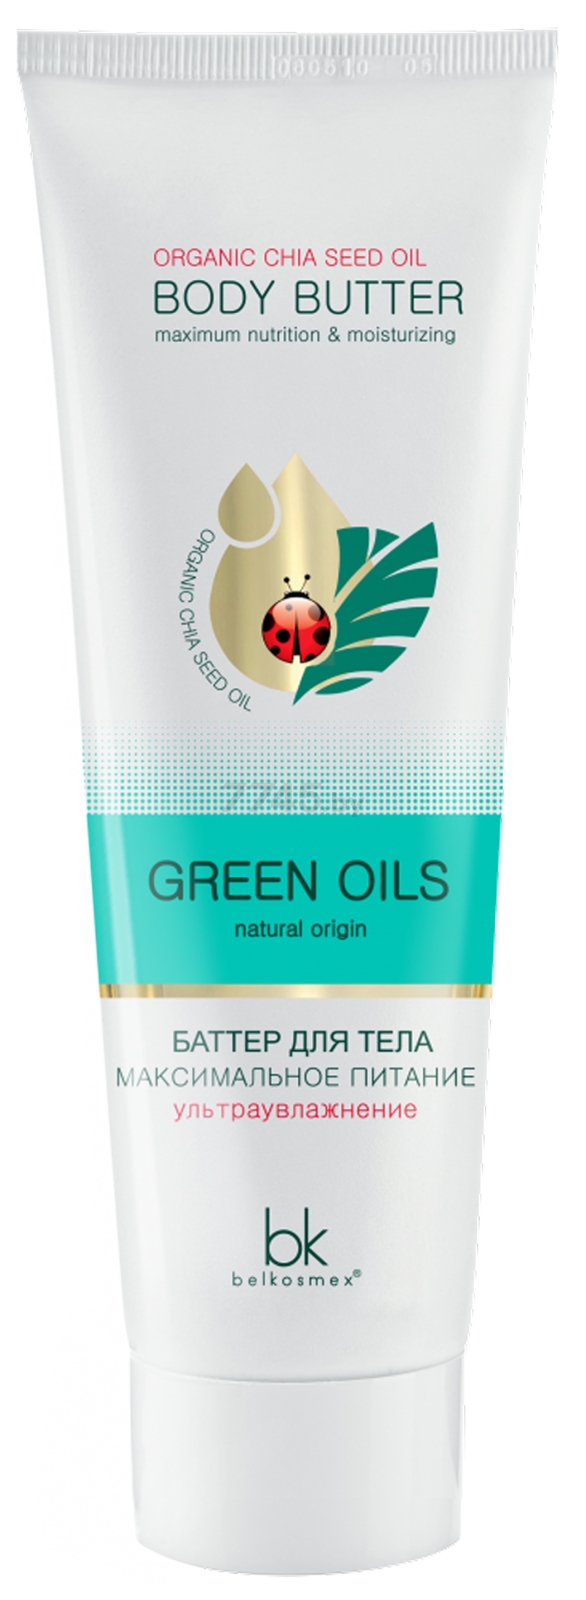 Баттер для тела BELKOSMEX Green Oils Максимальное питание 90 мл (4810090010928)